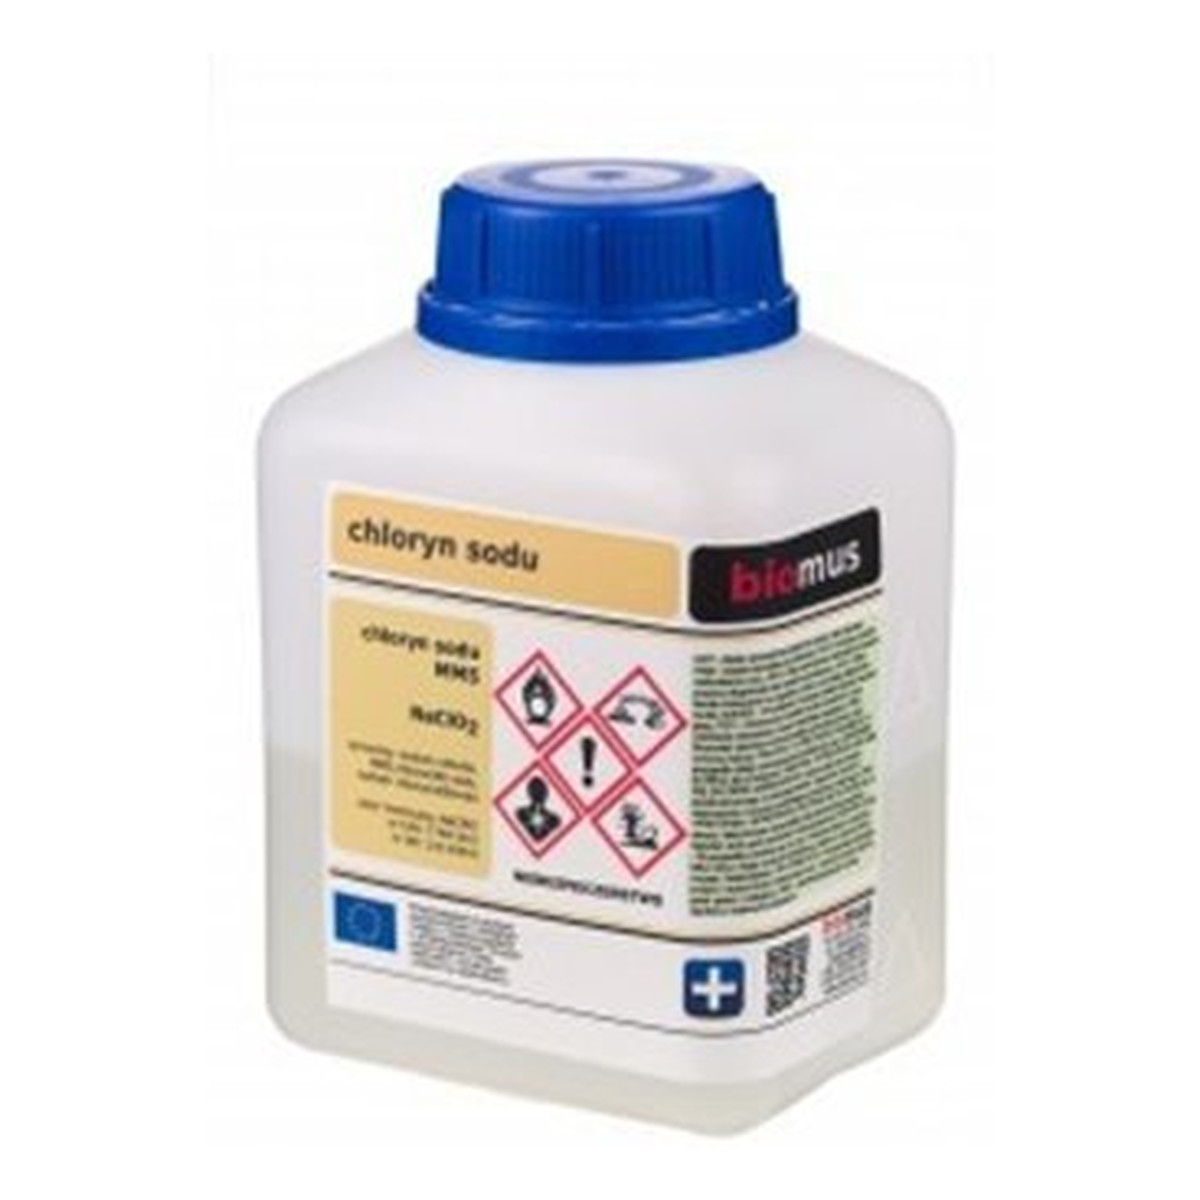 Biomus MSM Chloryn sodu roztwór 25-28% 100ml